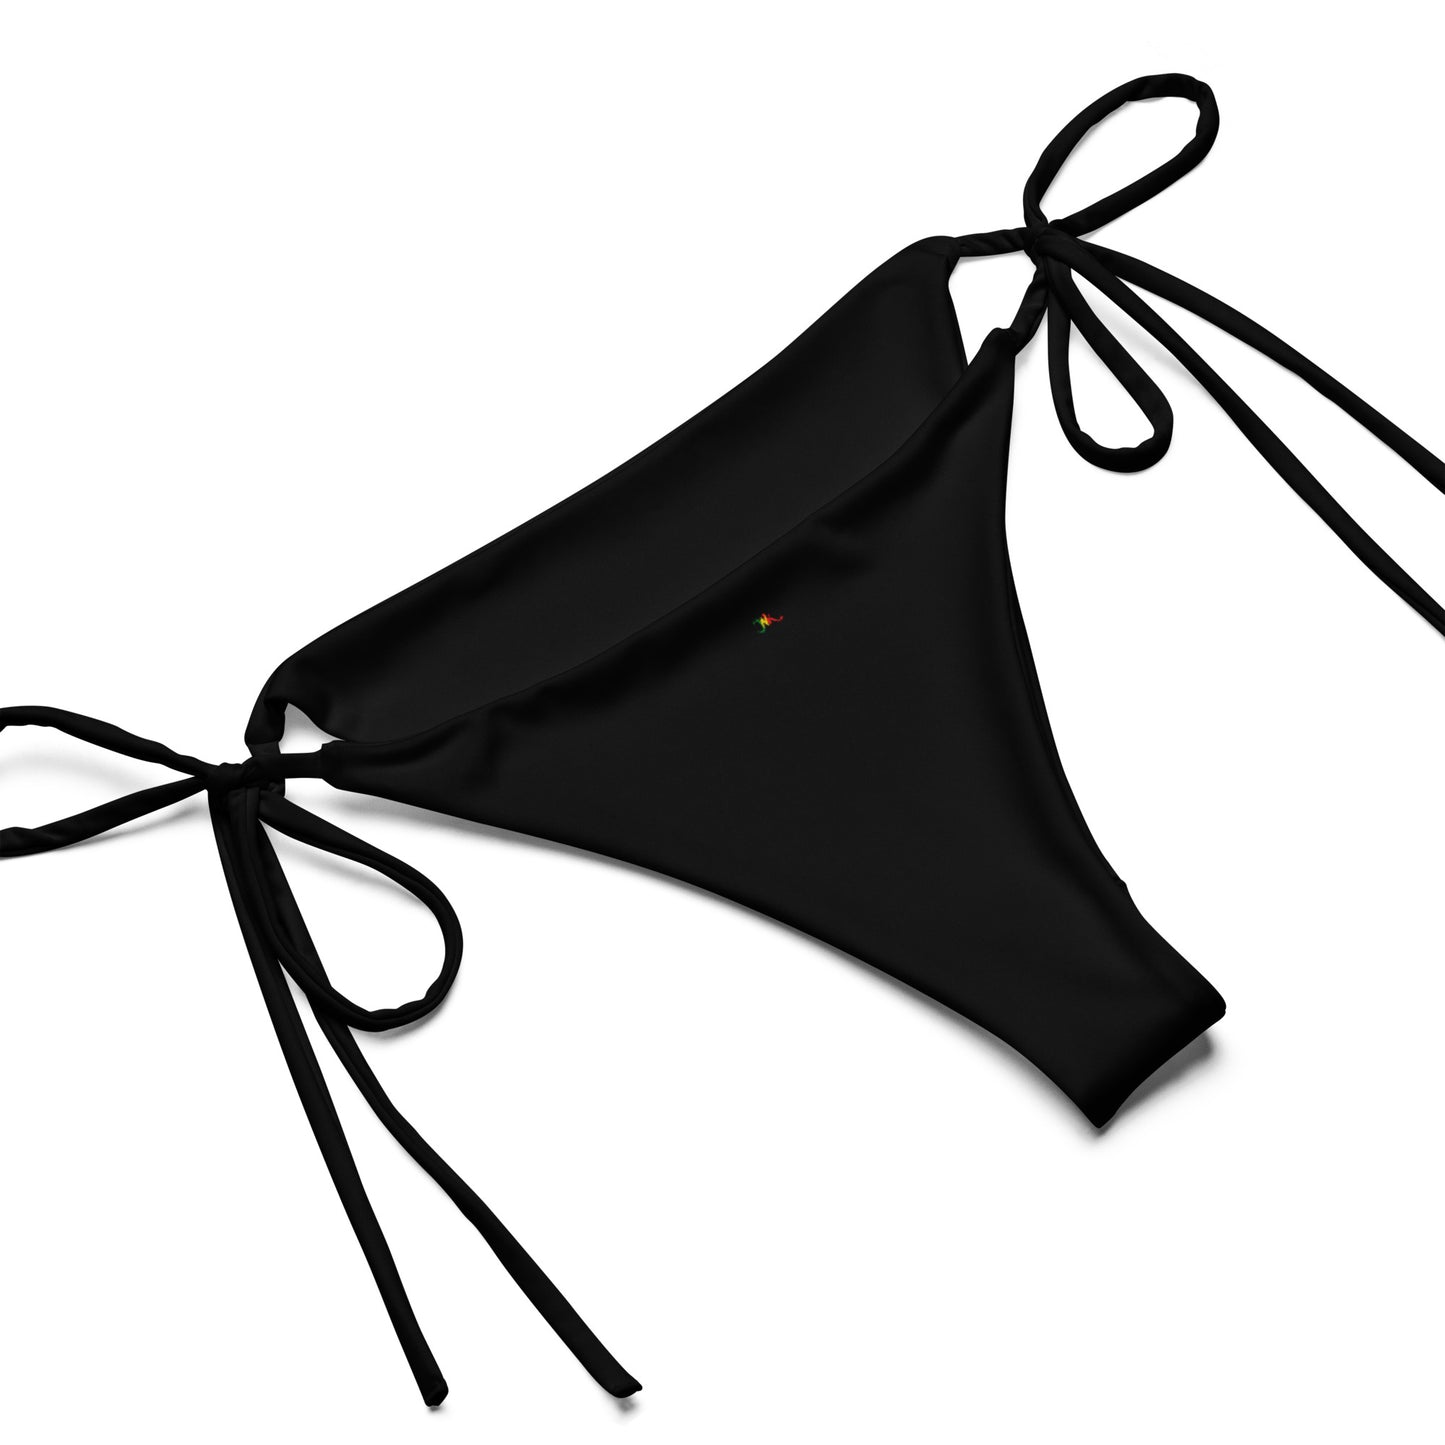 Bikini triangle - Yana